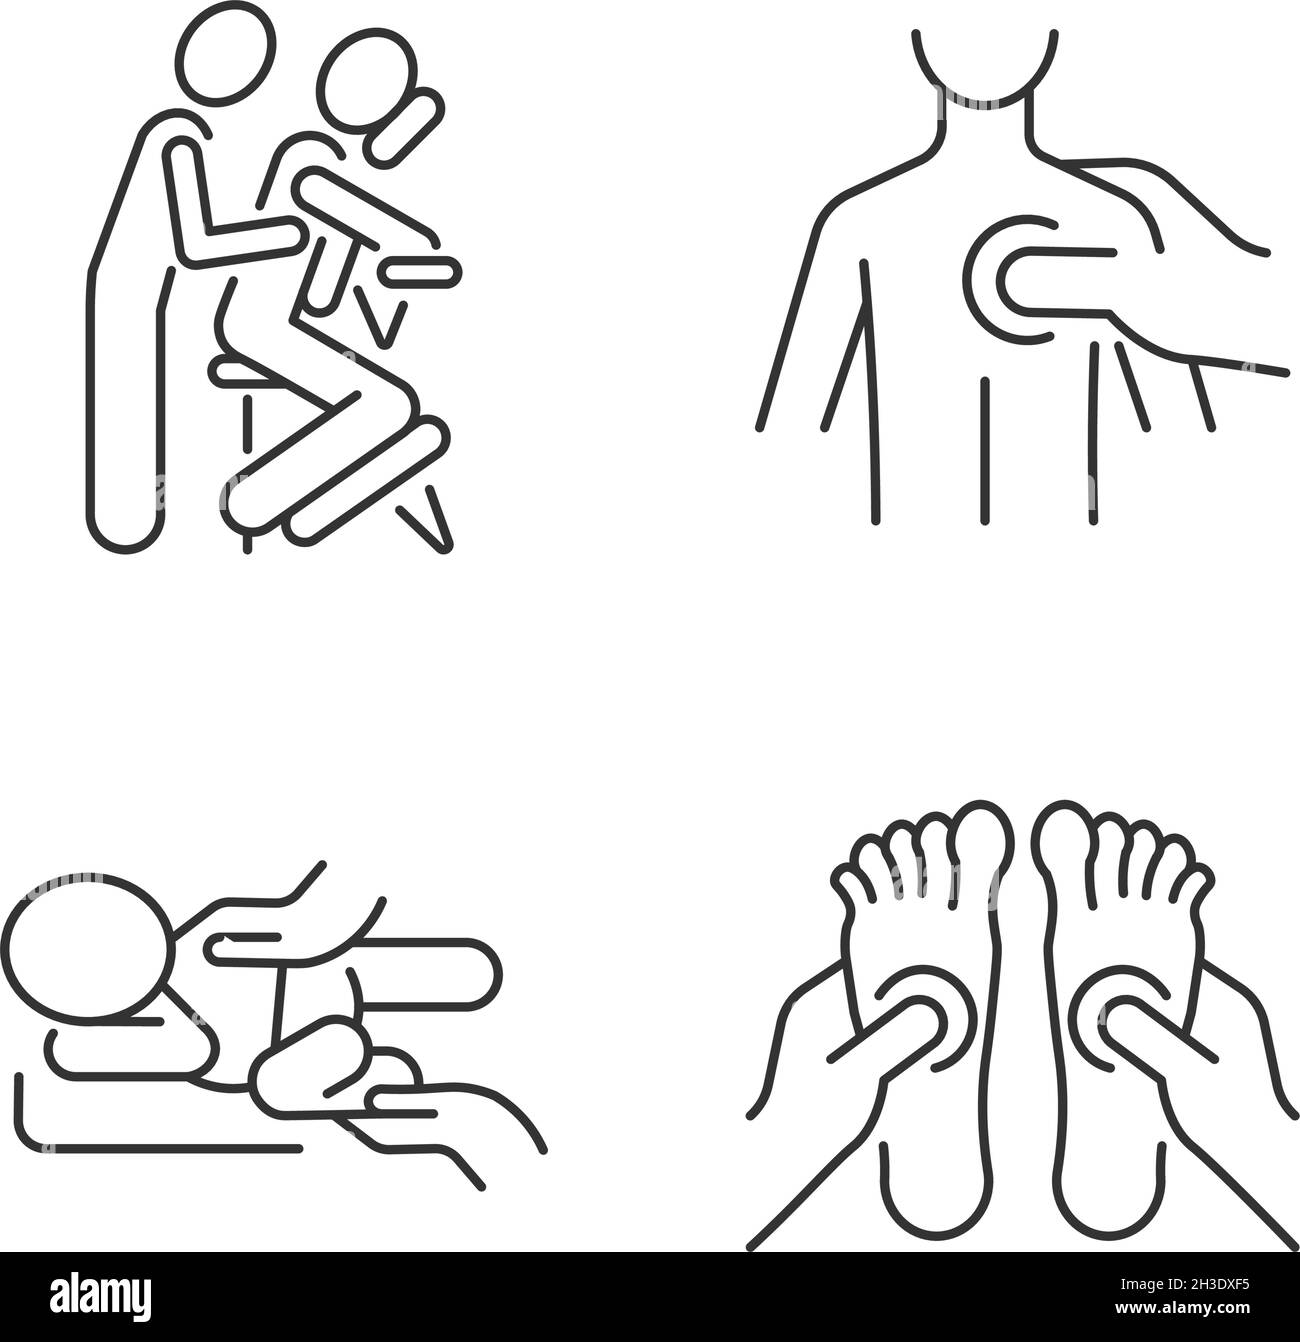 Terapia de masajes Imágenes de stock en blanco y negro - Alamy